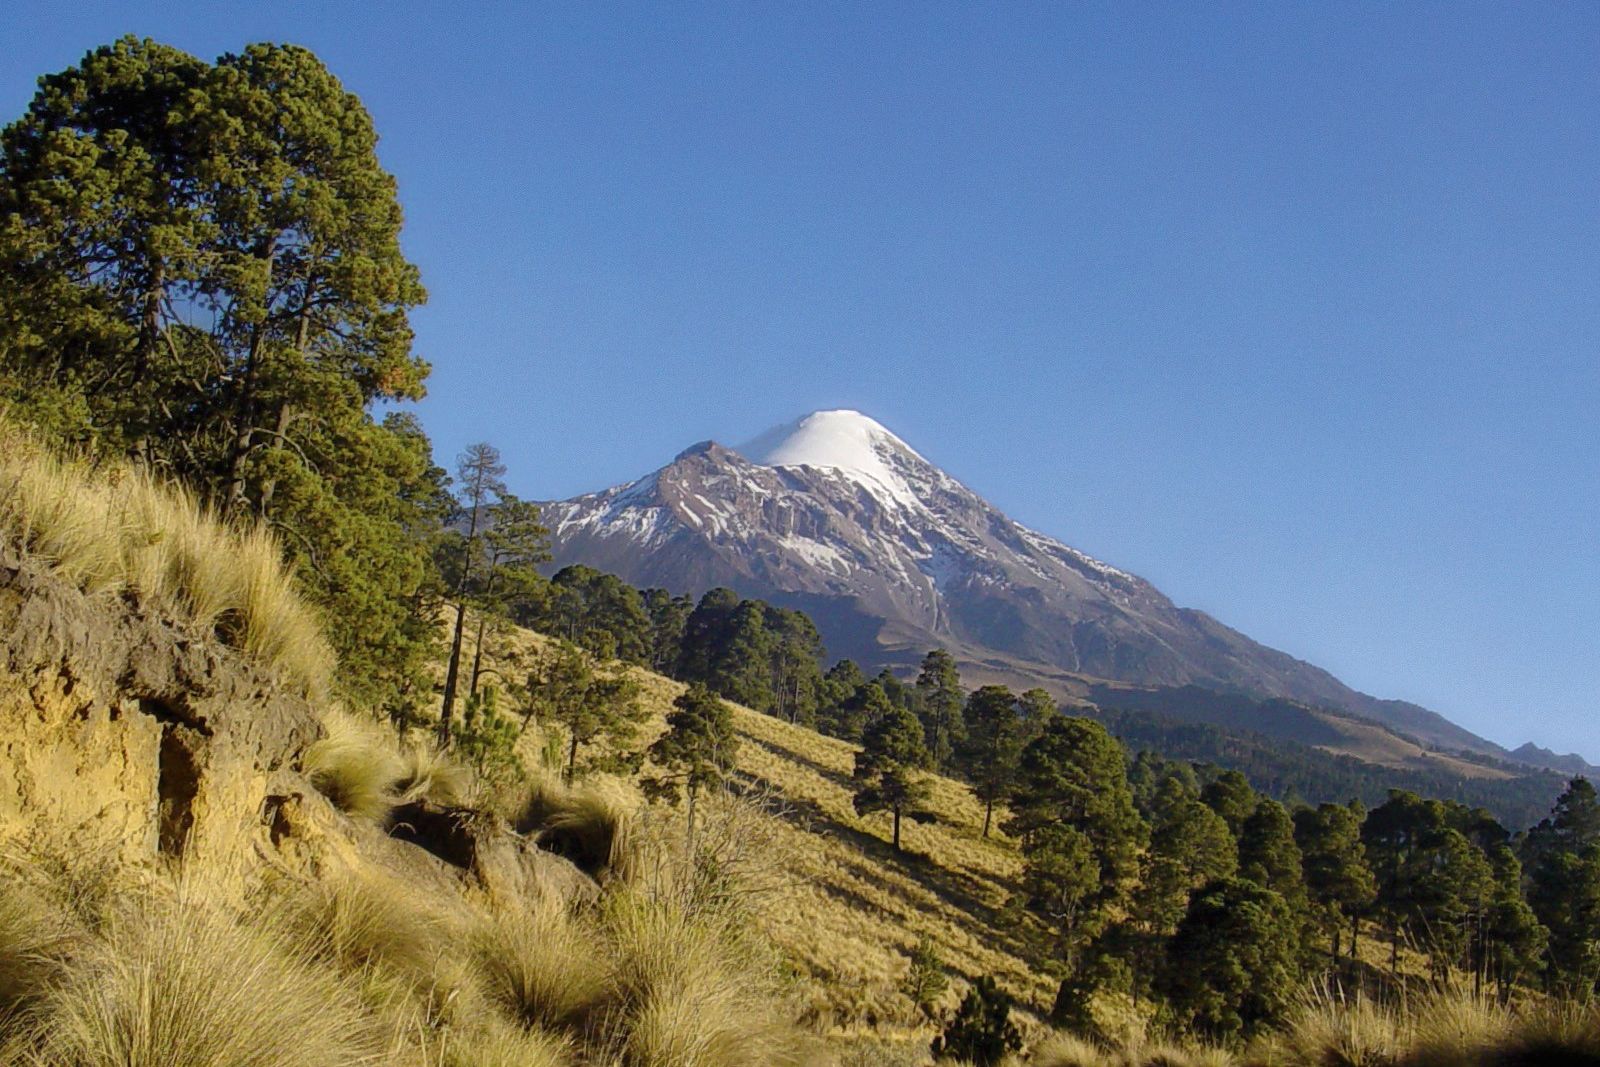 Citlaltepetl, höchster Berg Mexikos und gleichzeitig höchster Vulkan Nordamerikas